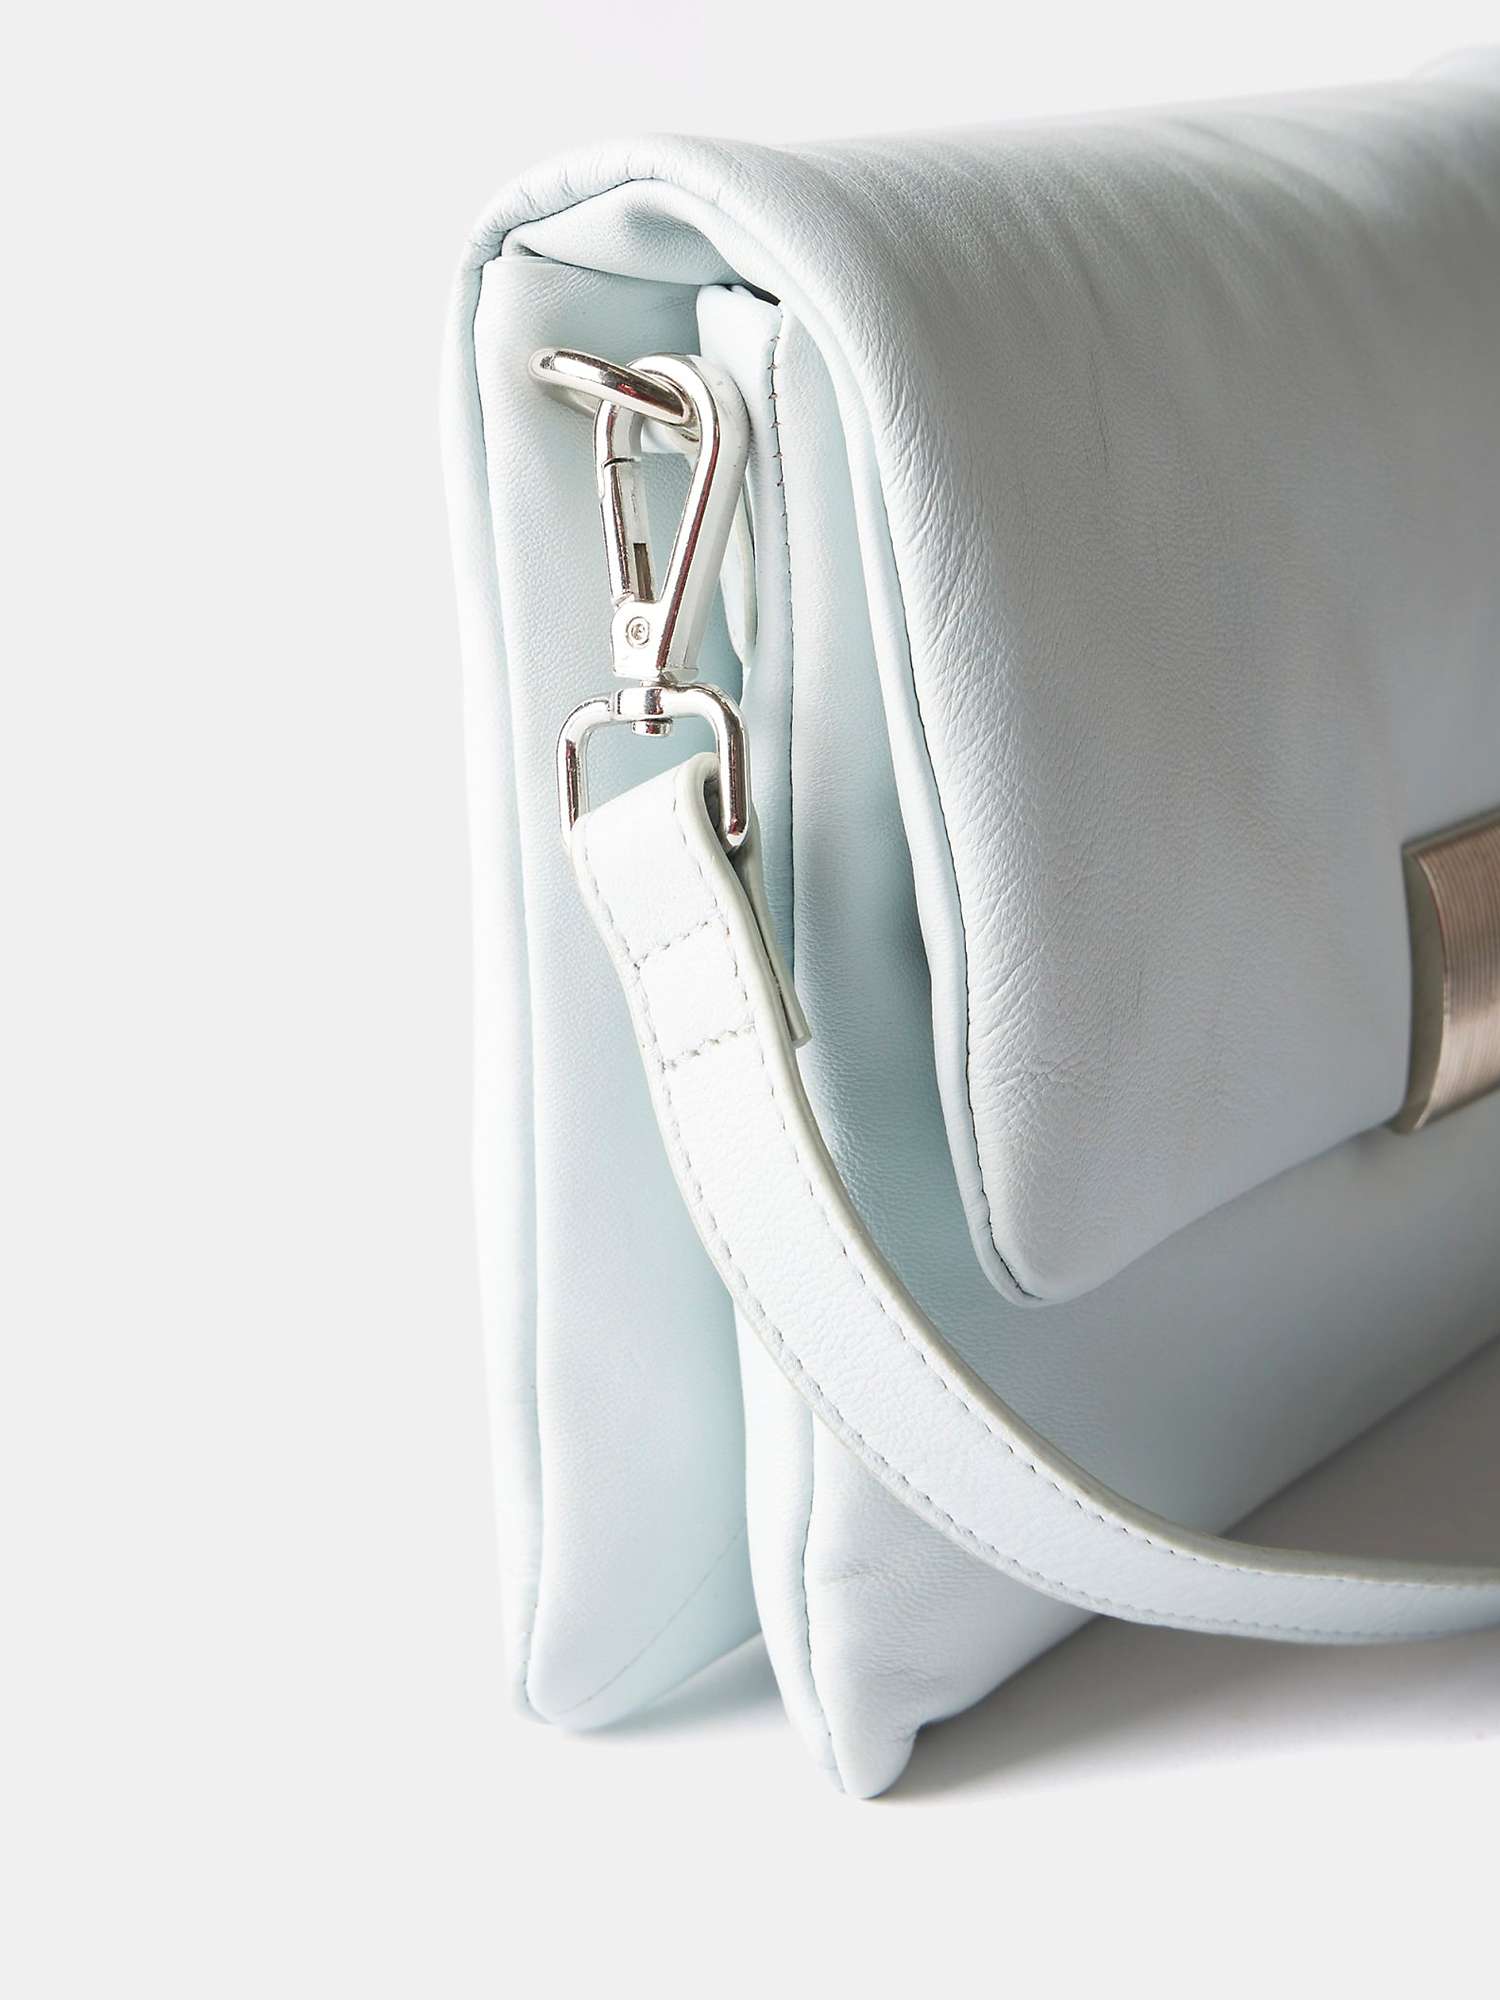 Buy Mint Velvet Soft Leather Cross Body Bag, Blue Online at johnlewis.com